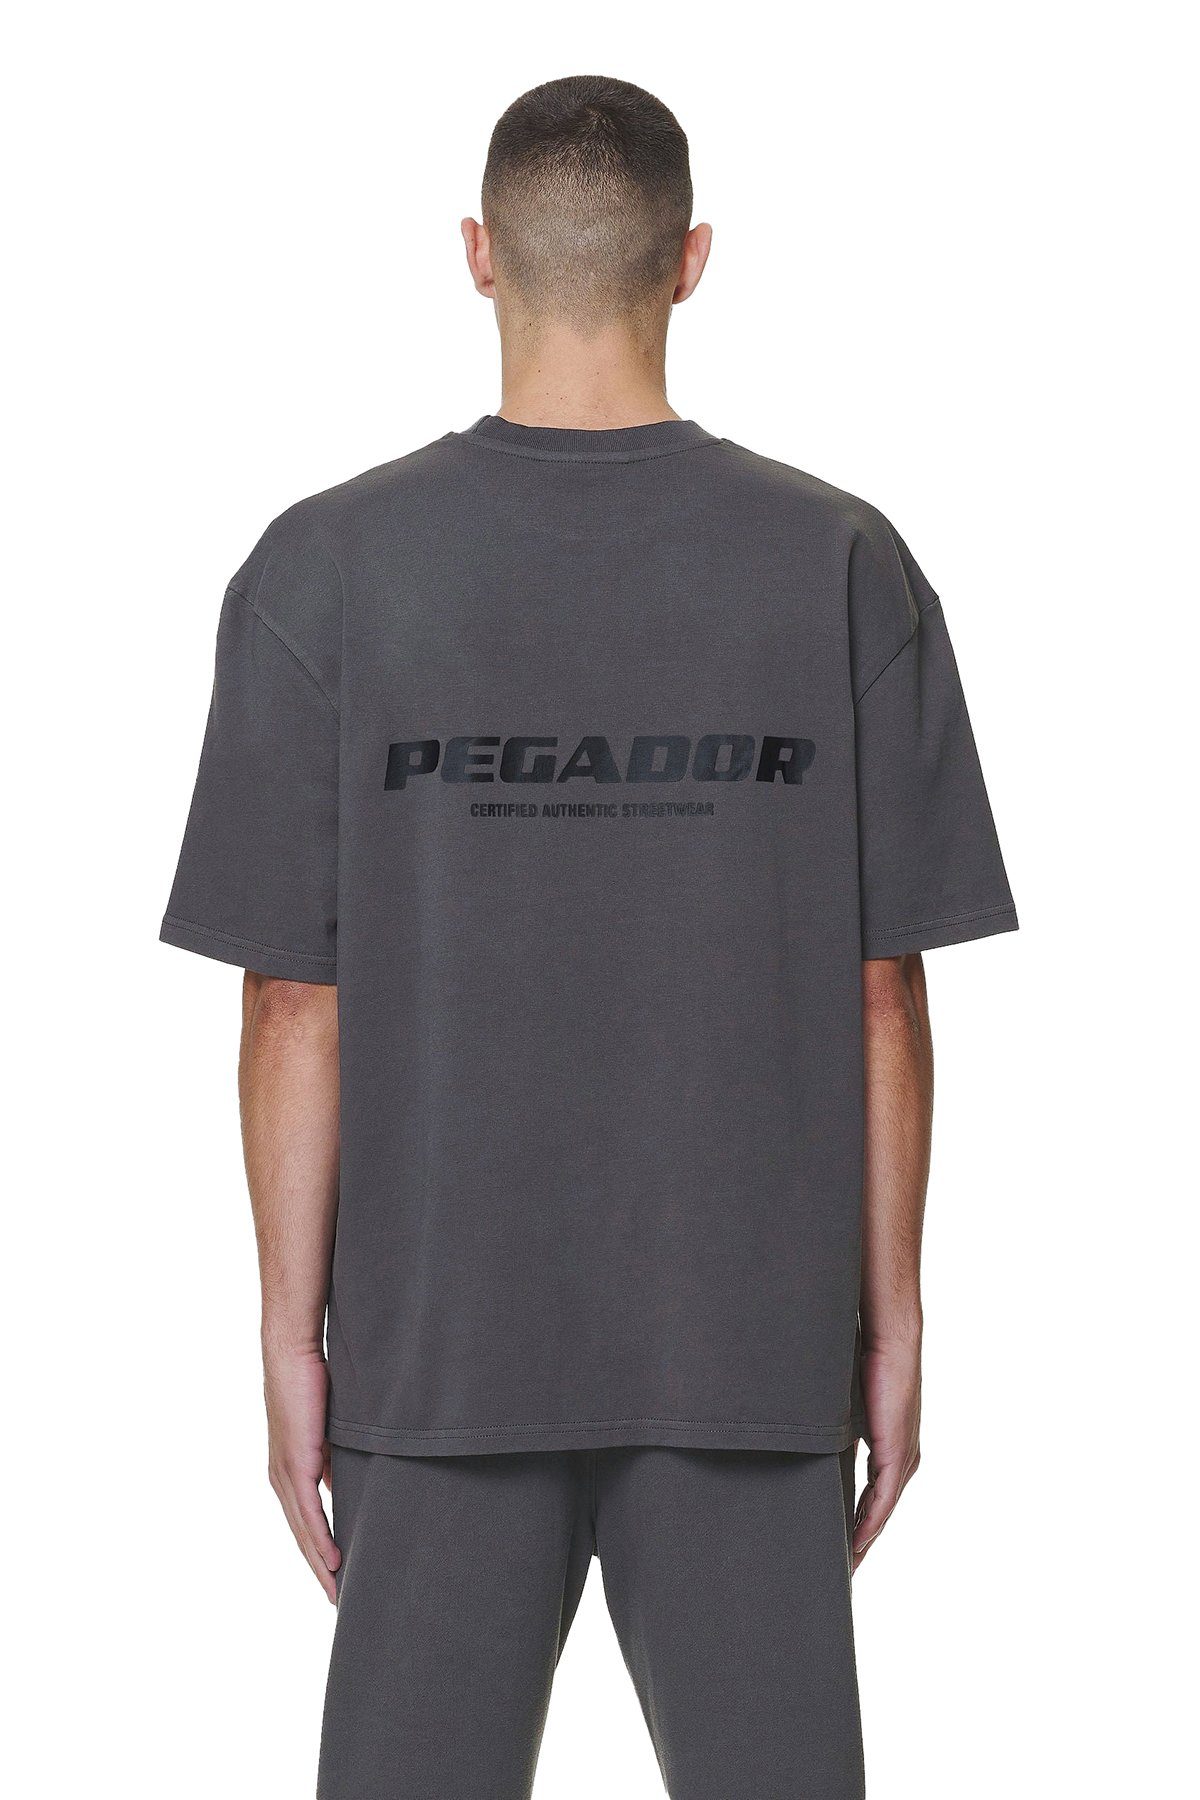 Colne Pegador Logo T-Shirt